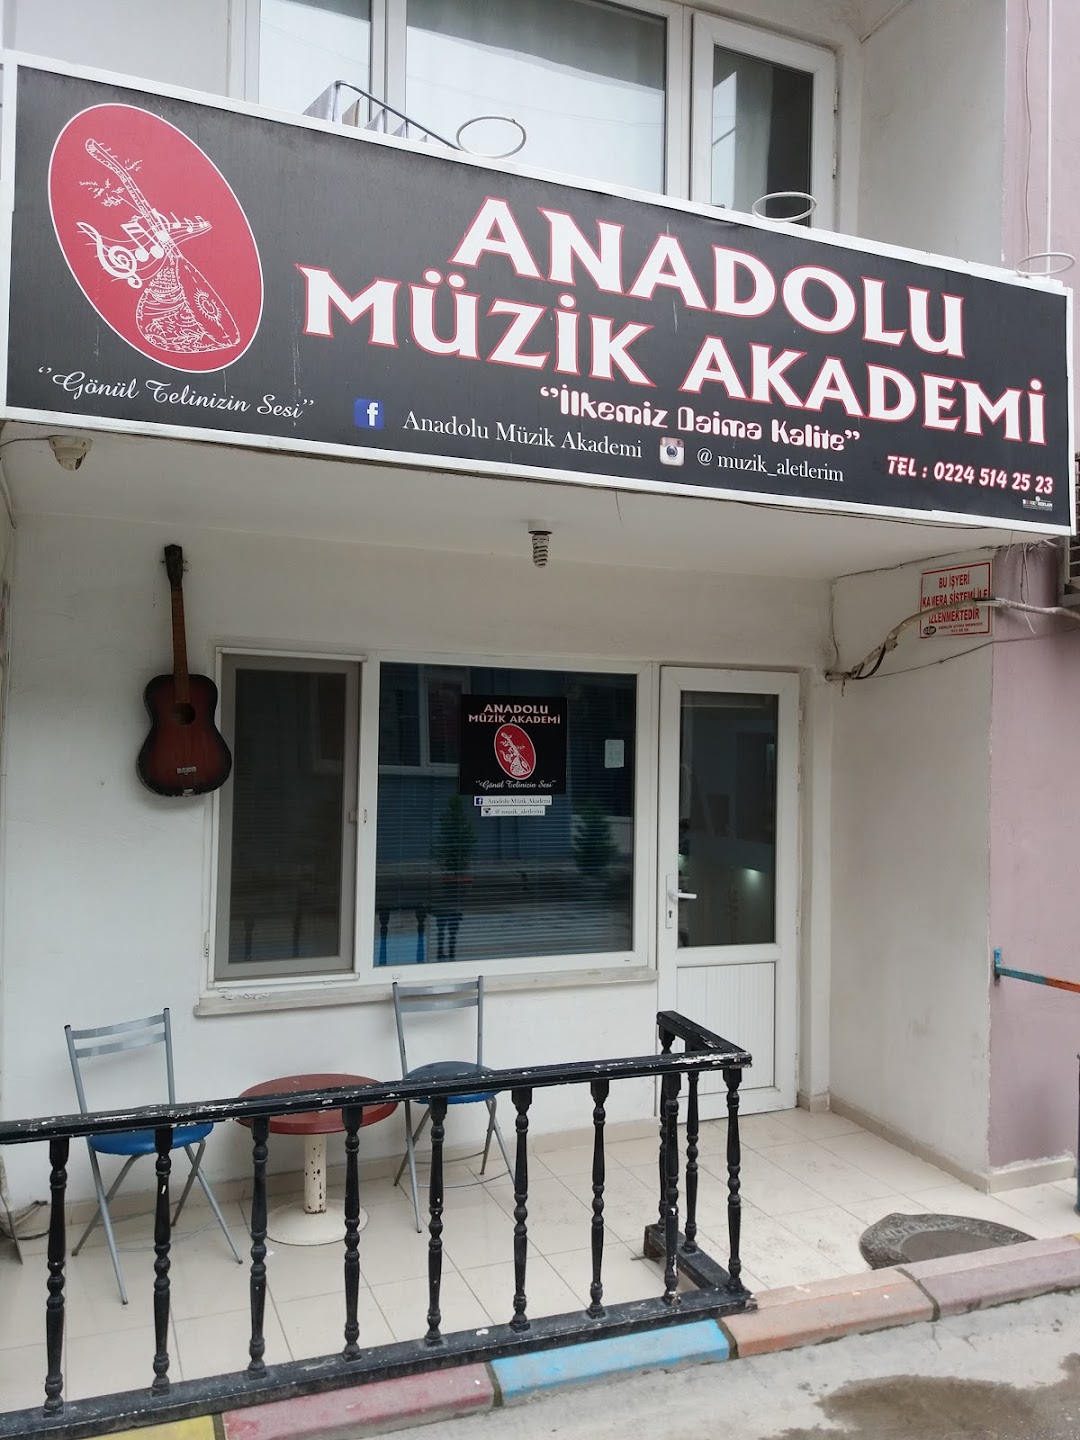 Anadolu Mzik Akademi